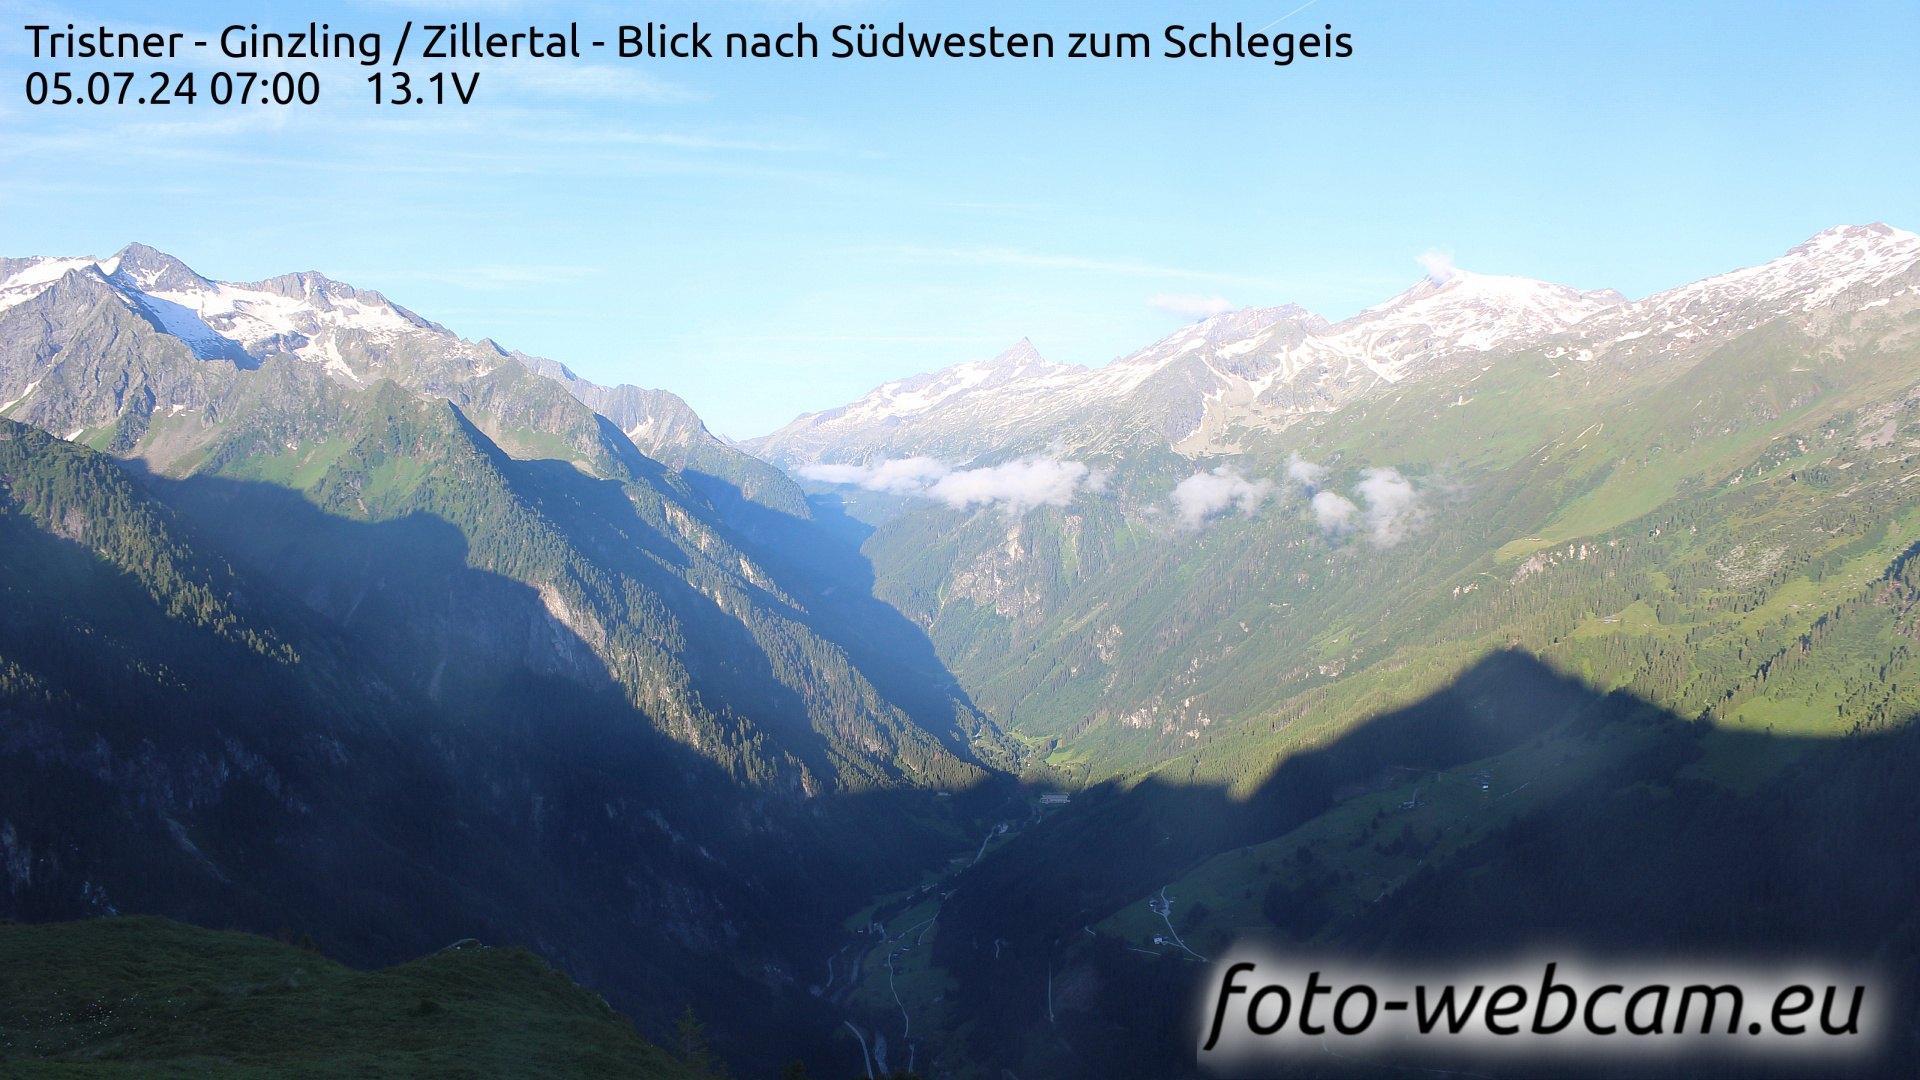 Mayrhofen Je. 07:01